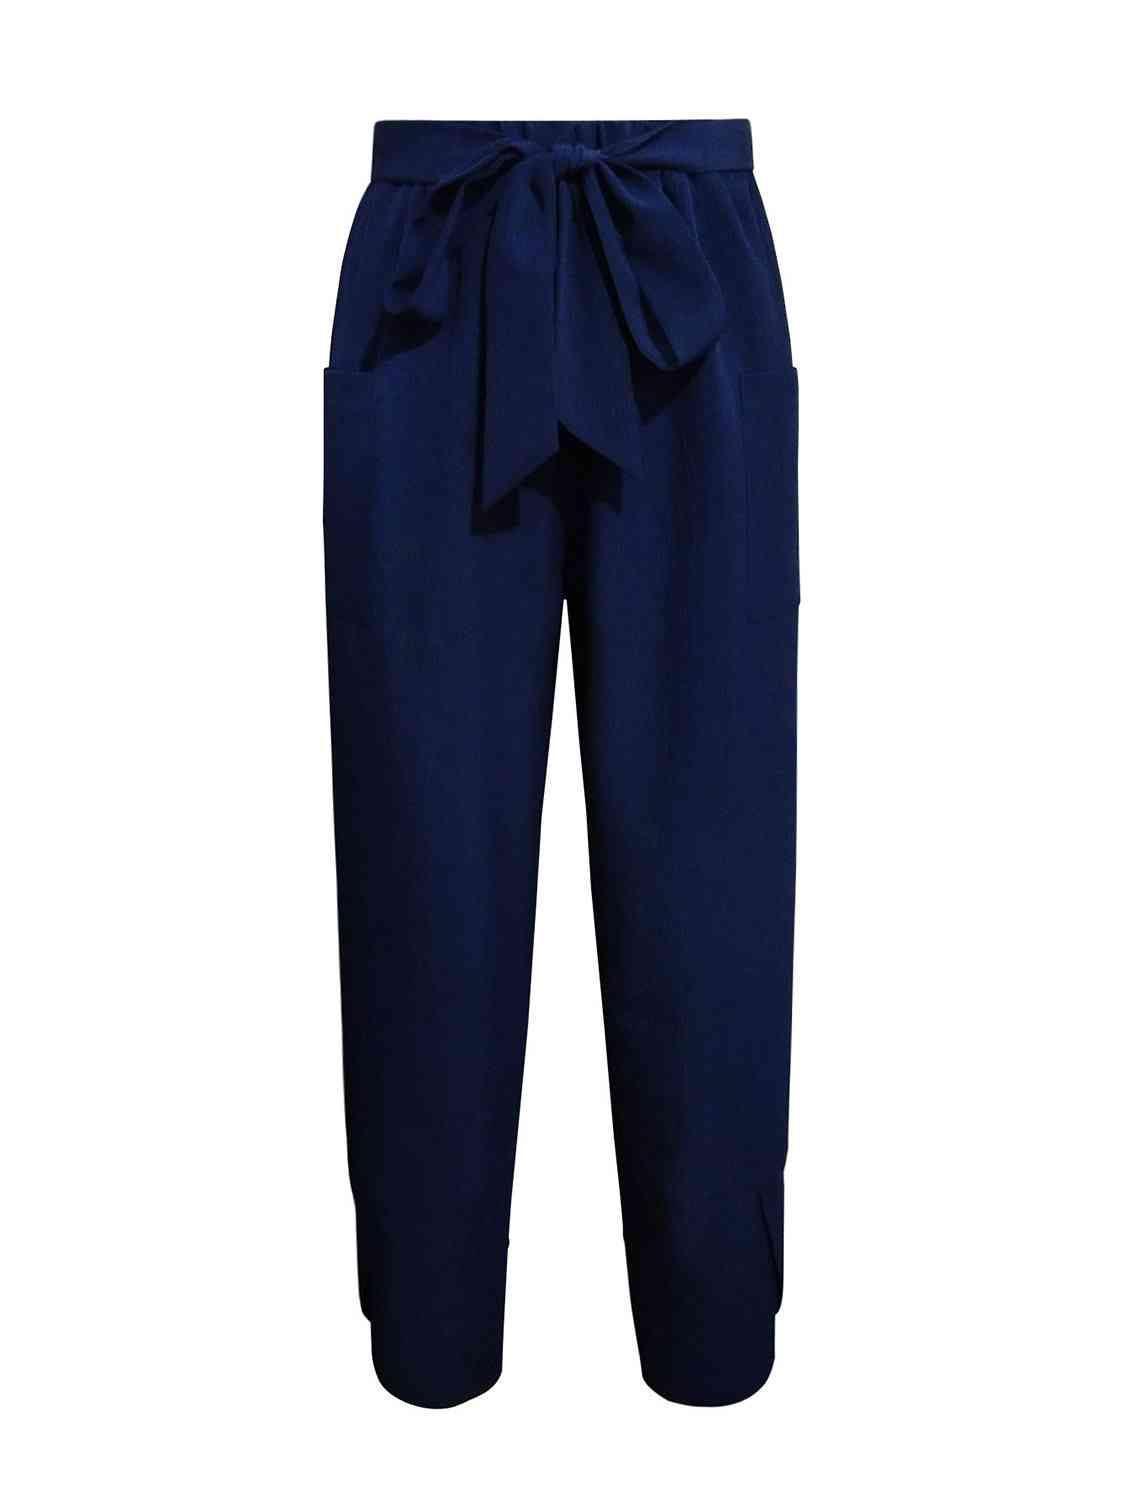 Navy Blue Women's Tie Front Pants - MXSTUDIO.COM